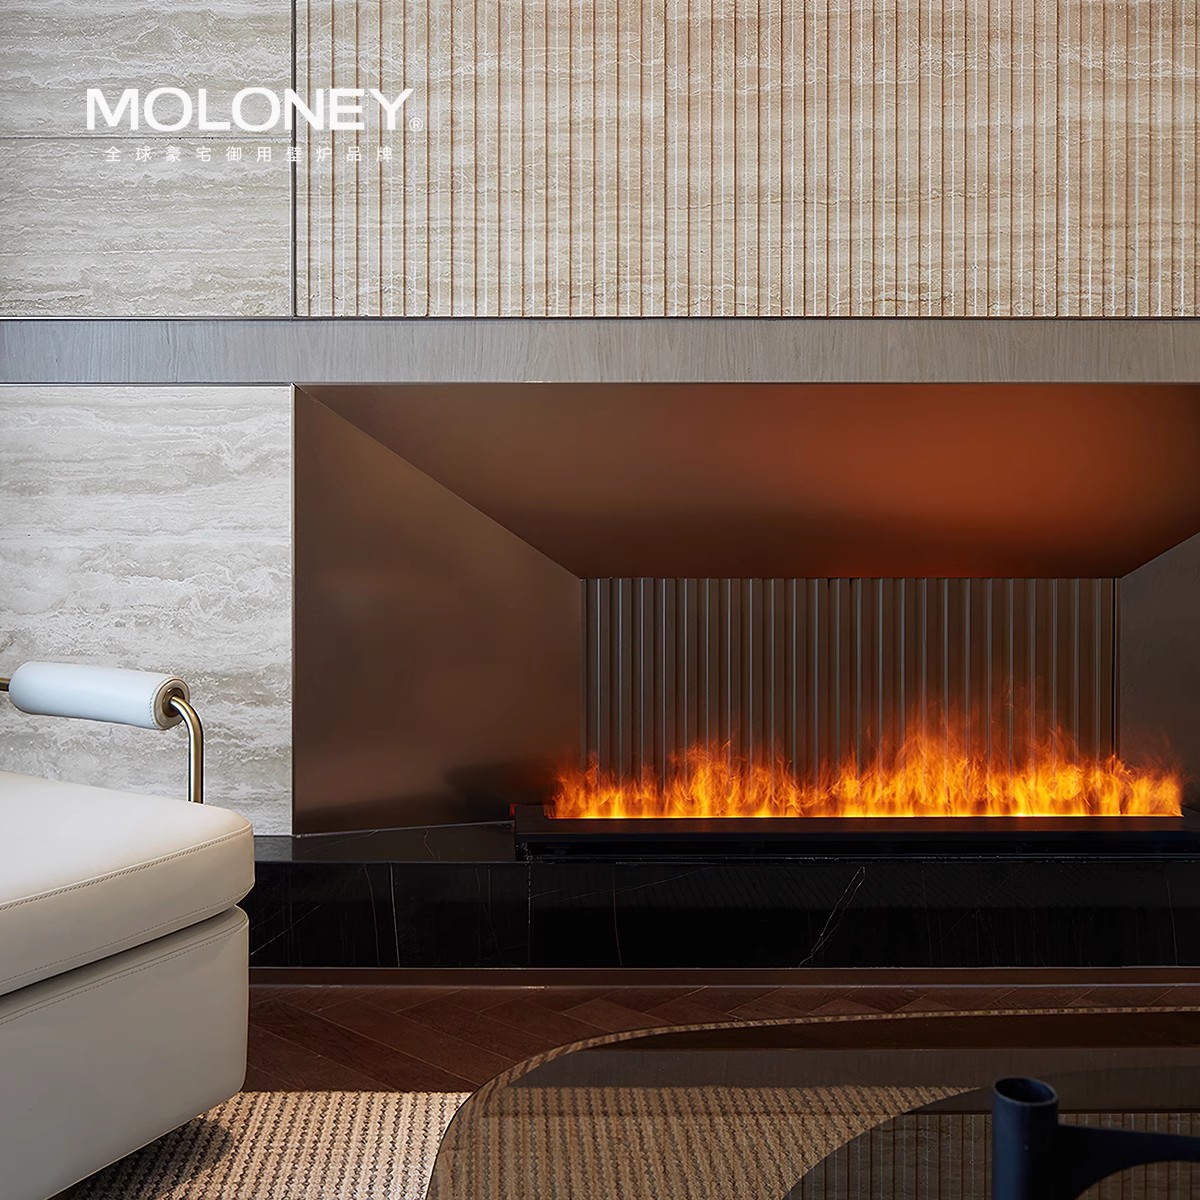 MOLONEY I 莫洛尼全景view雾化壁炉设计师定制款豪宅御用壁炉